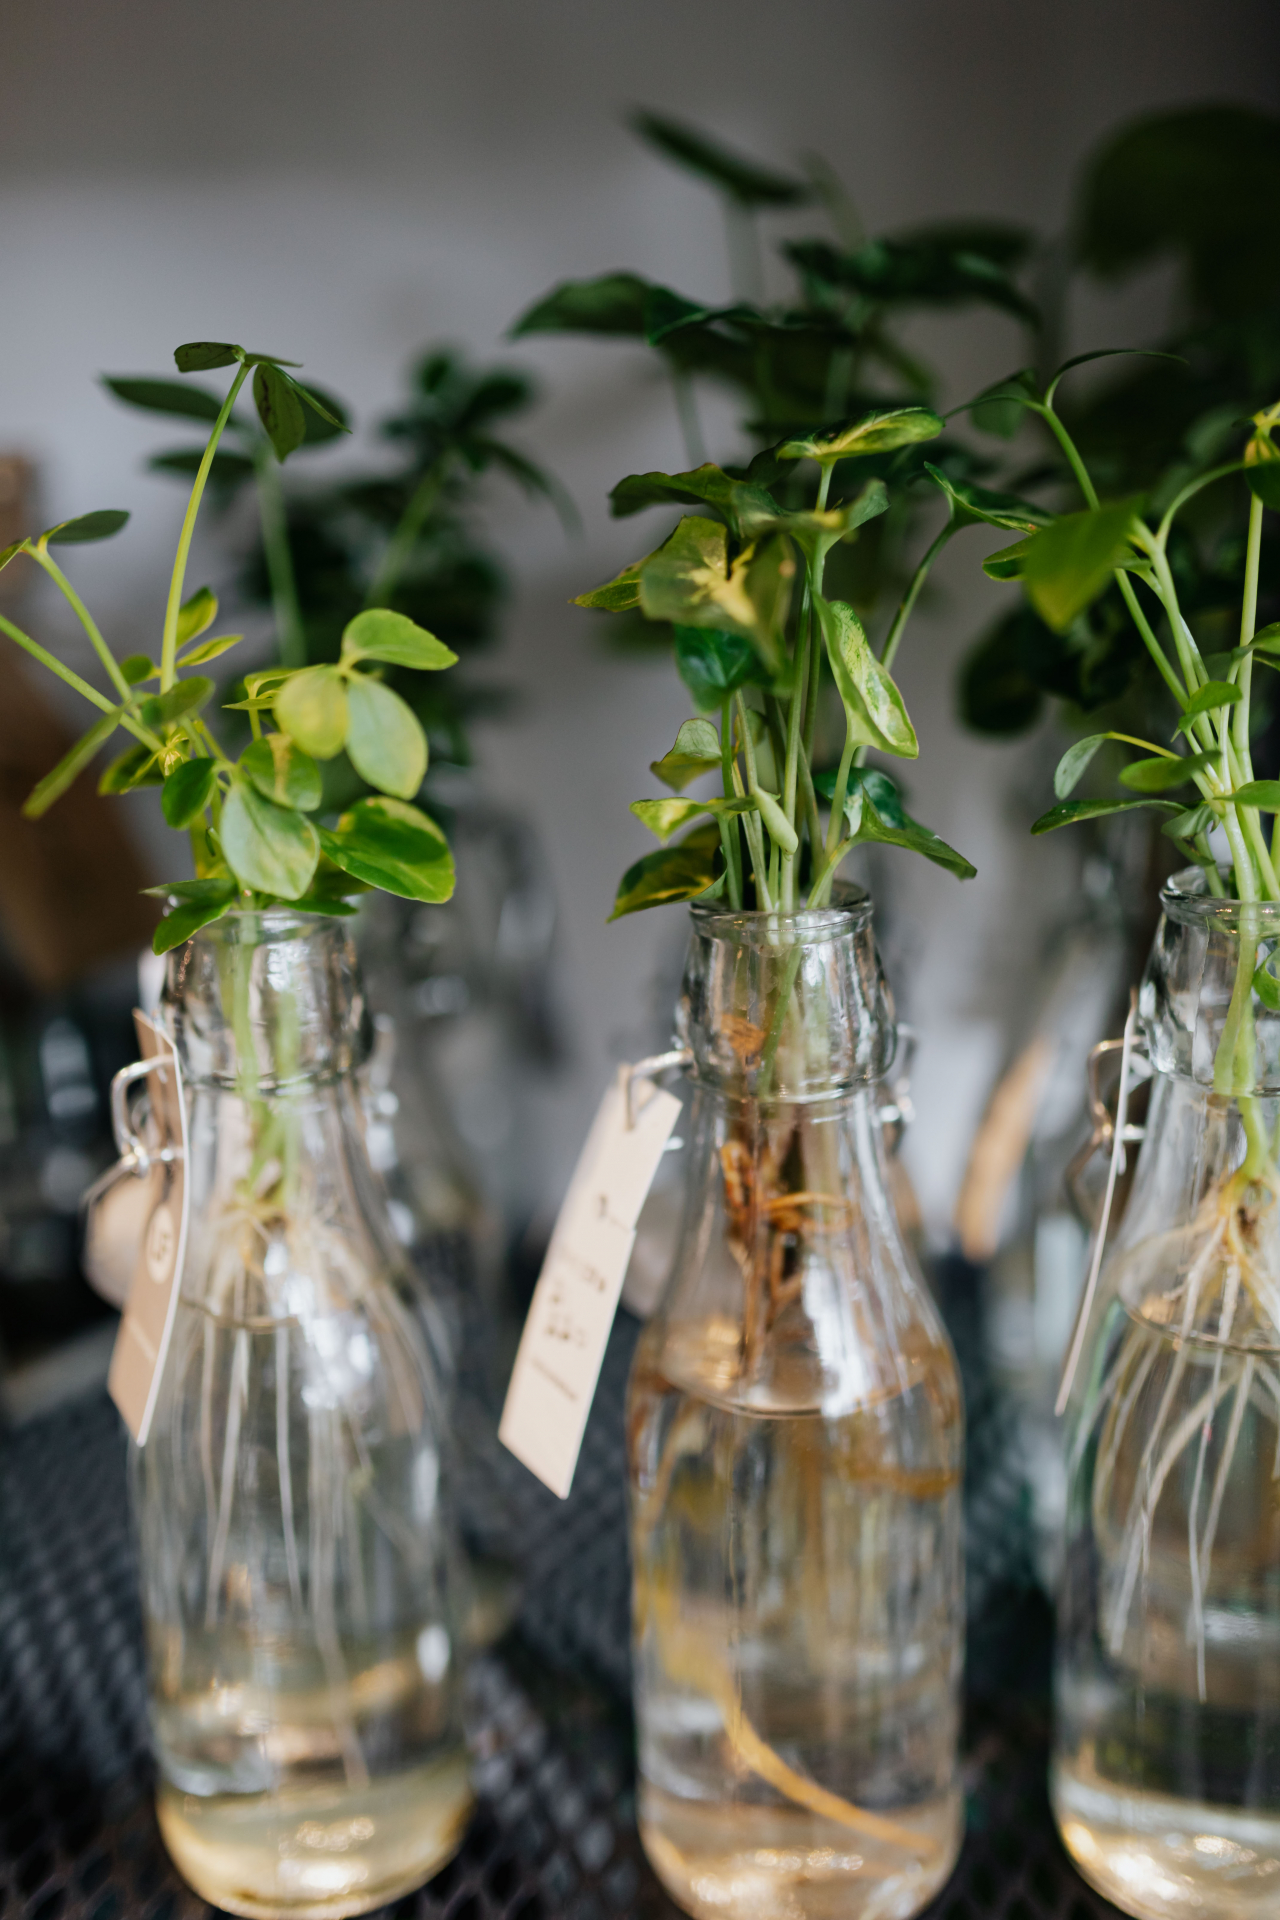 plants propagating in a bottle